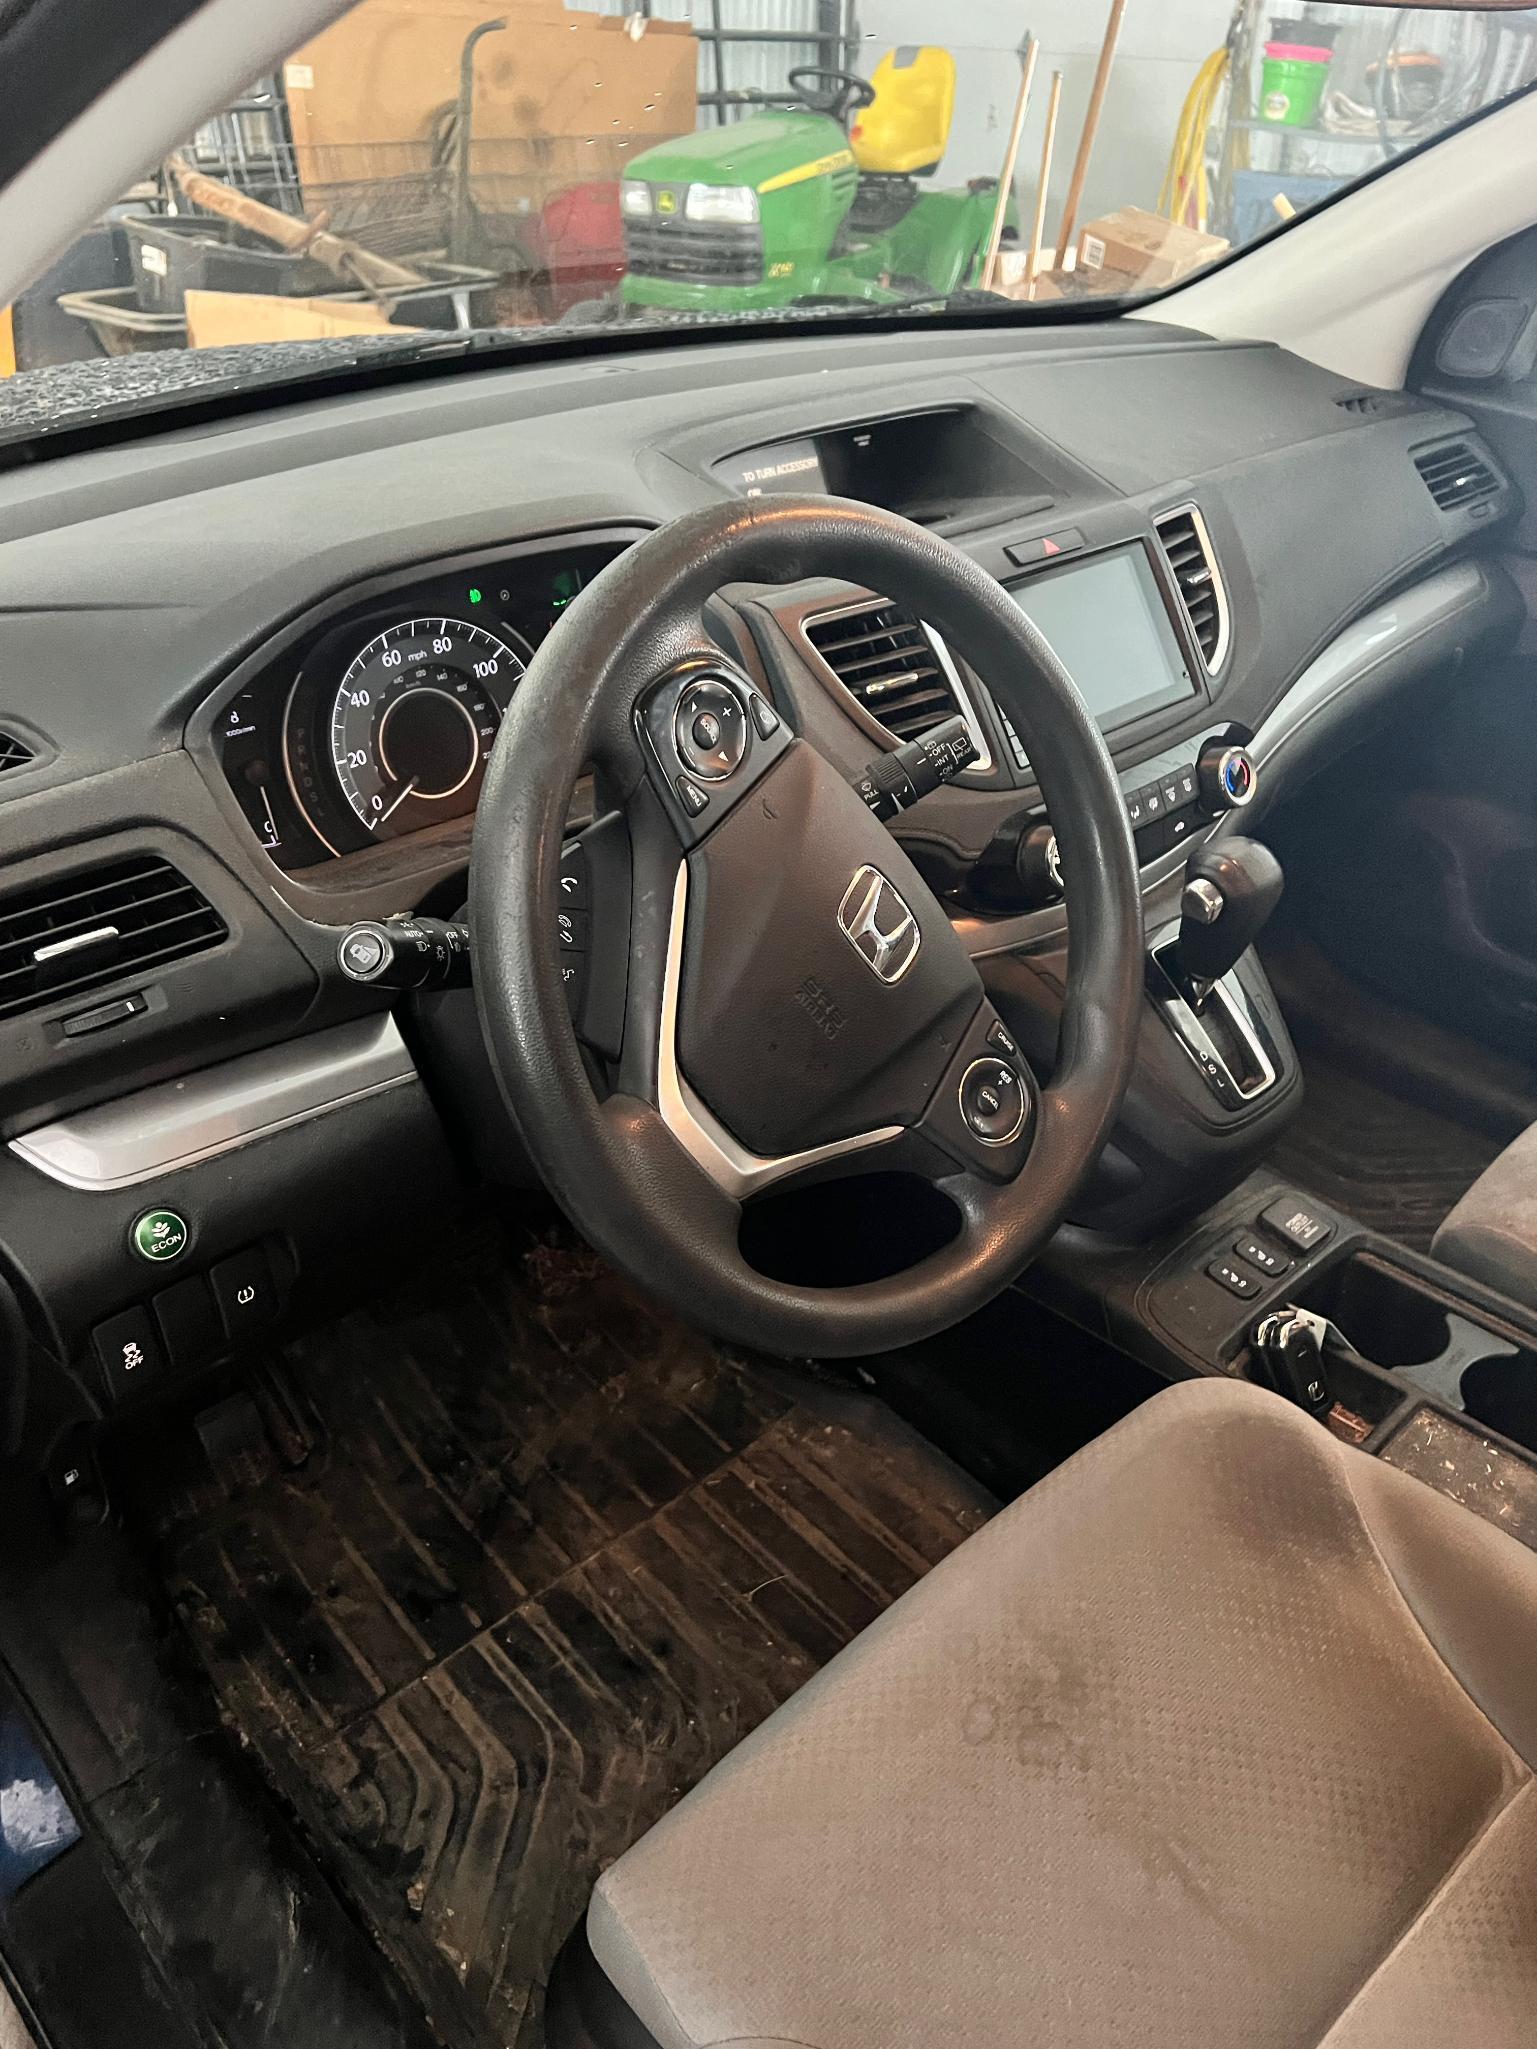 2015 Honda CR-V Multipurpose Vehicle (MPV), VIN # 2hkrm4h54fh648472